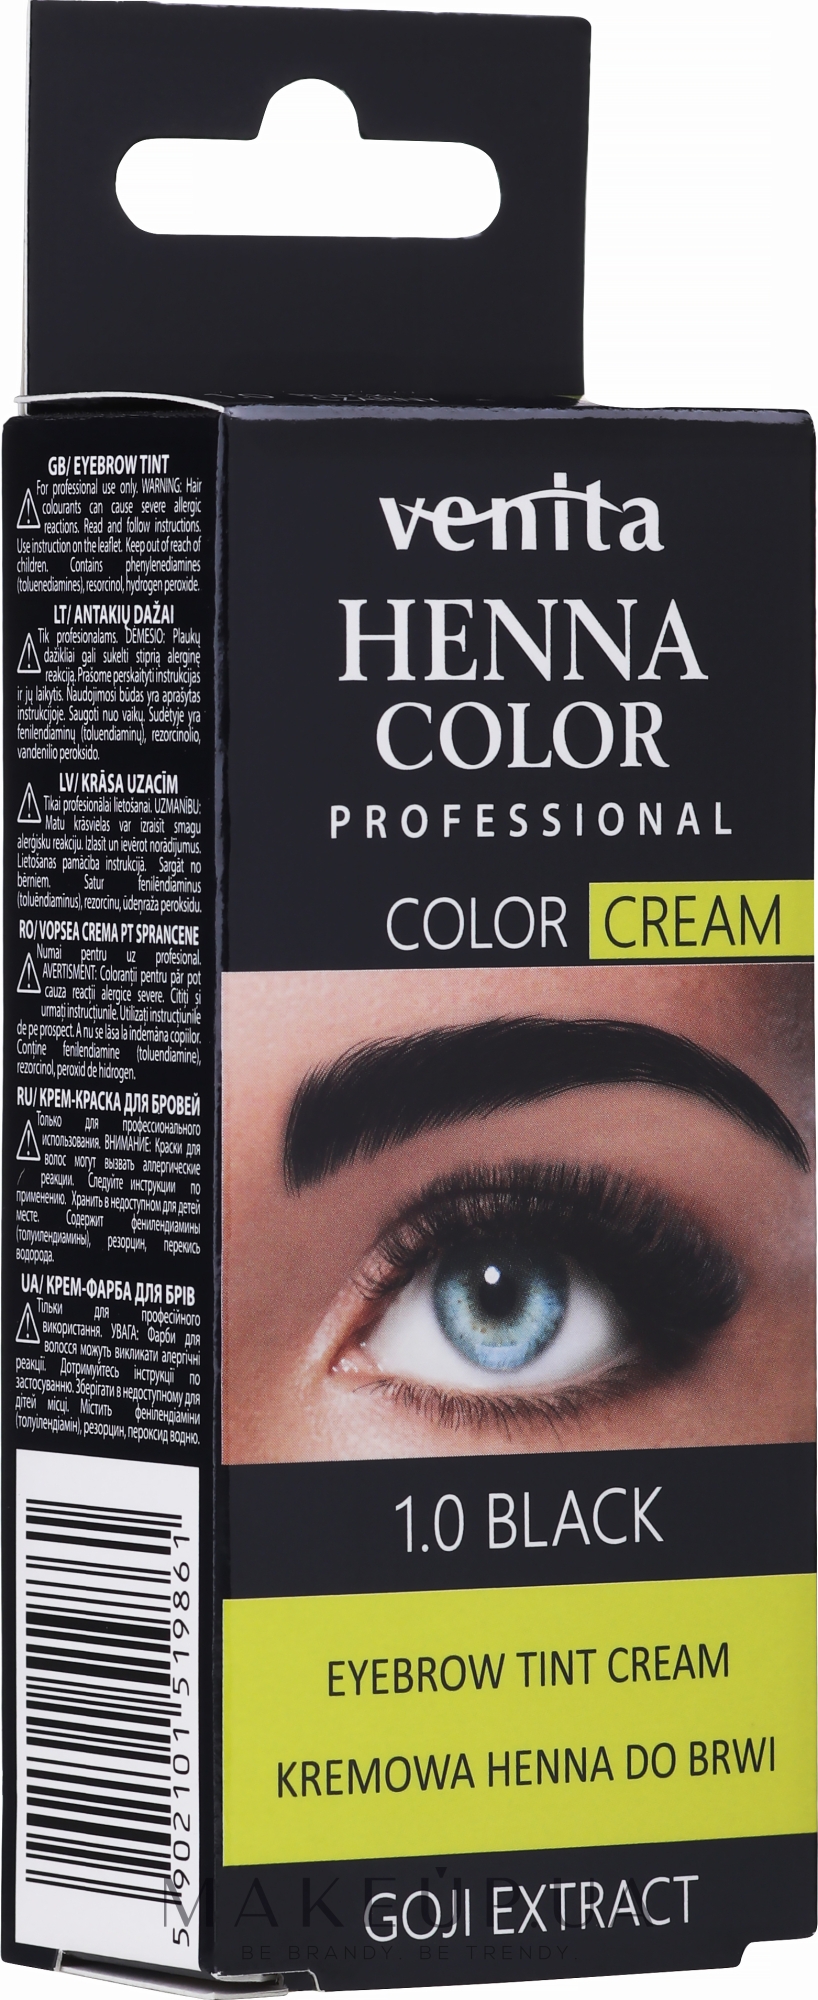 Крем-краска для окрашивания бровей с хной - Venita Professional Henna Color Cream Eyebrow Tint Cream — фото 1.0 - Black